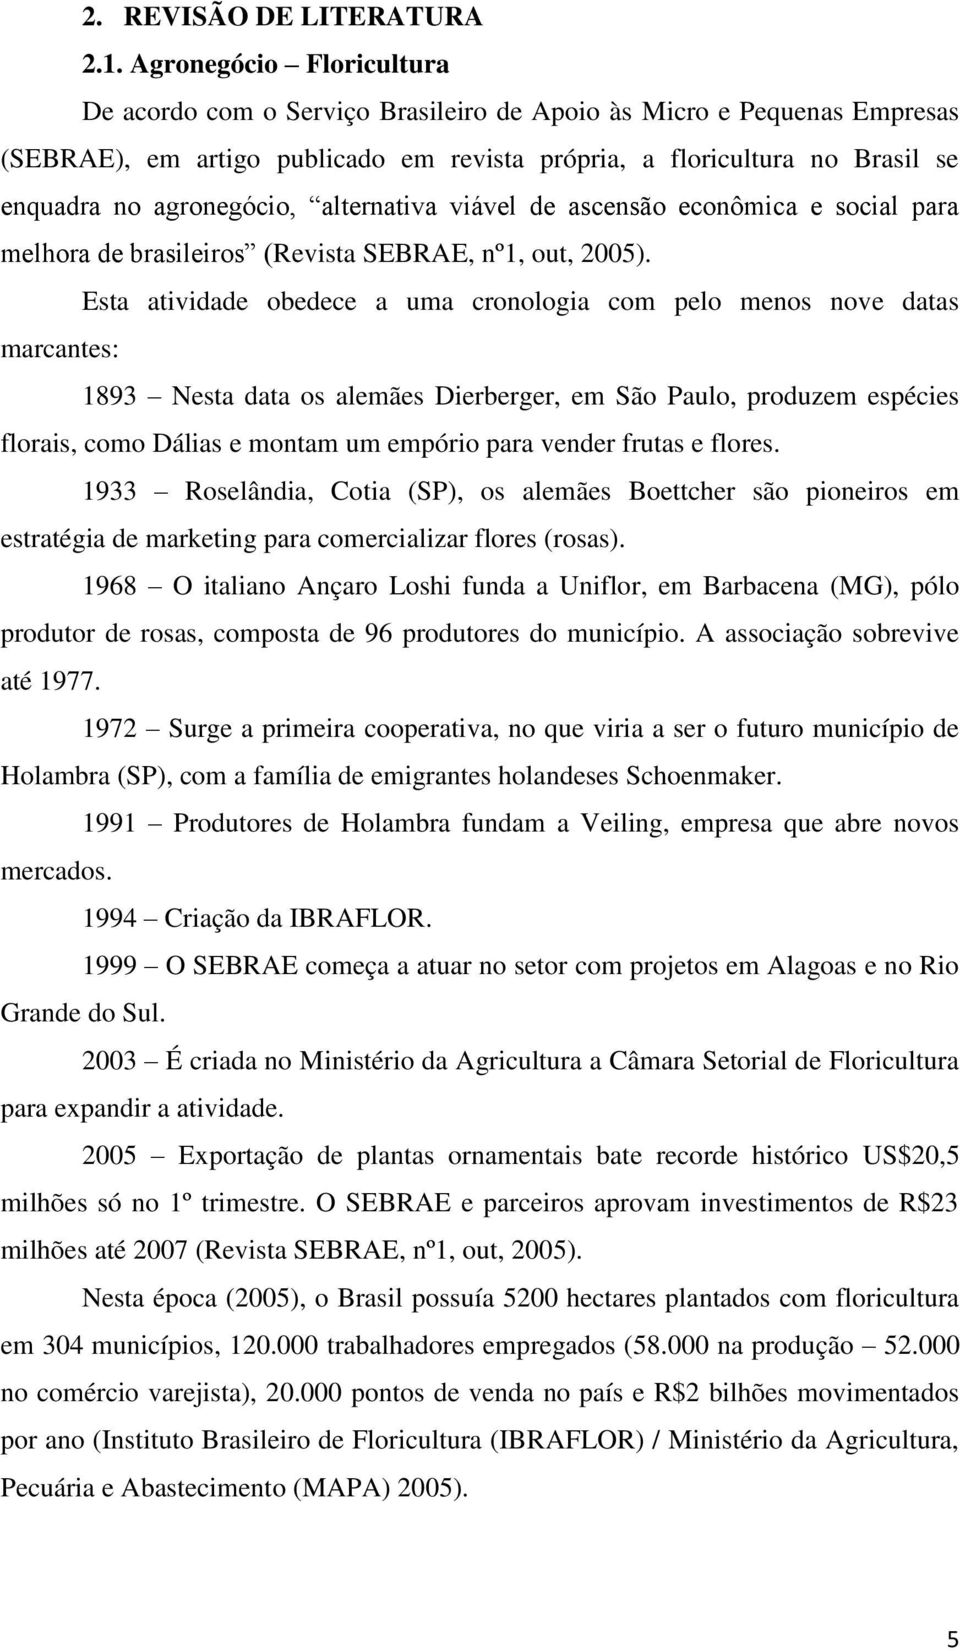 de scensão econômic e socil pr melhor de rsileiros (Revist SEBRAE, nº1, out, 2005).